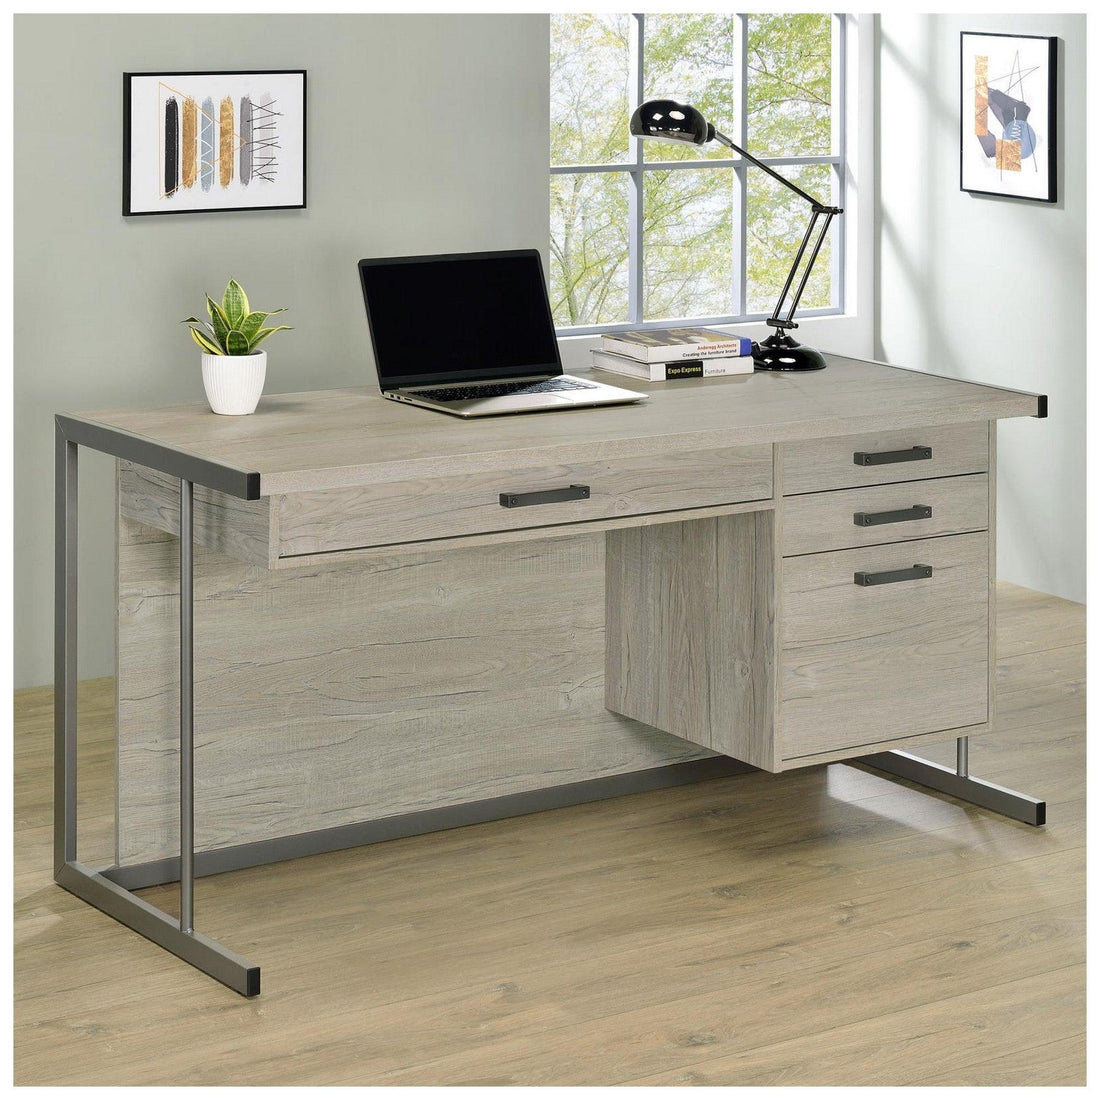 Loomis 4-drawer Rectangular Office Desk Whitewashed Grey and Gunmetal 805881